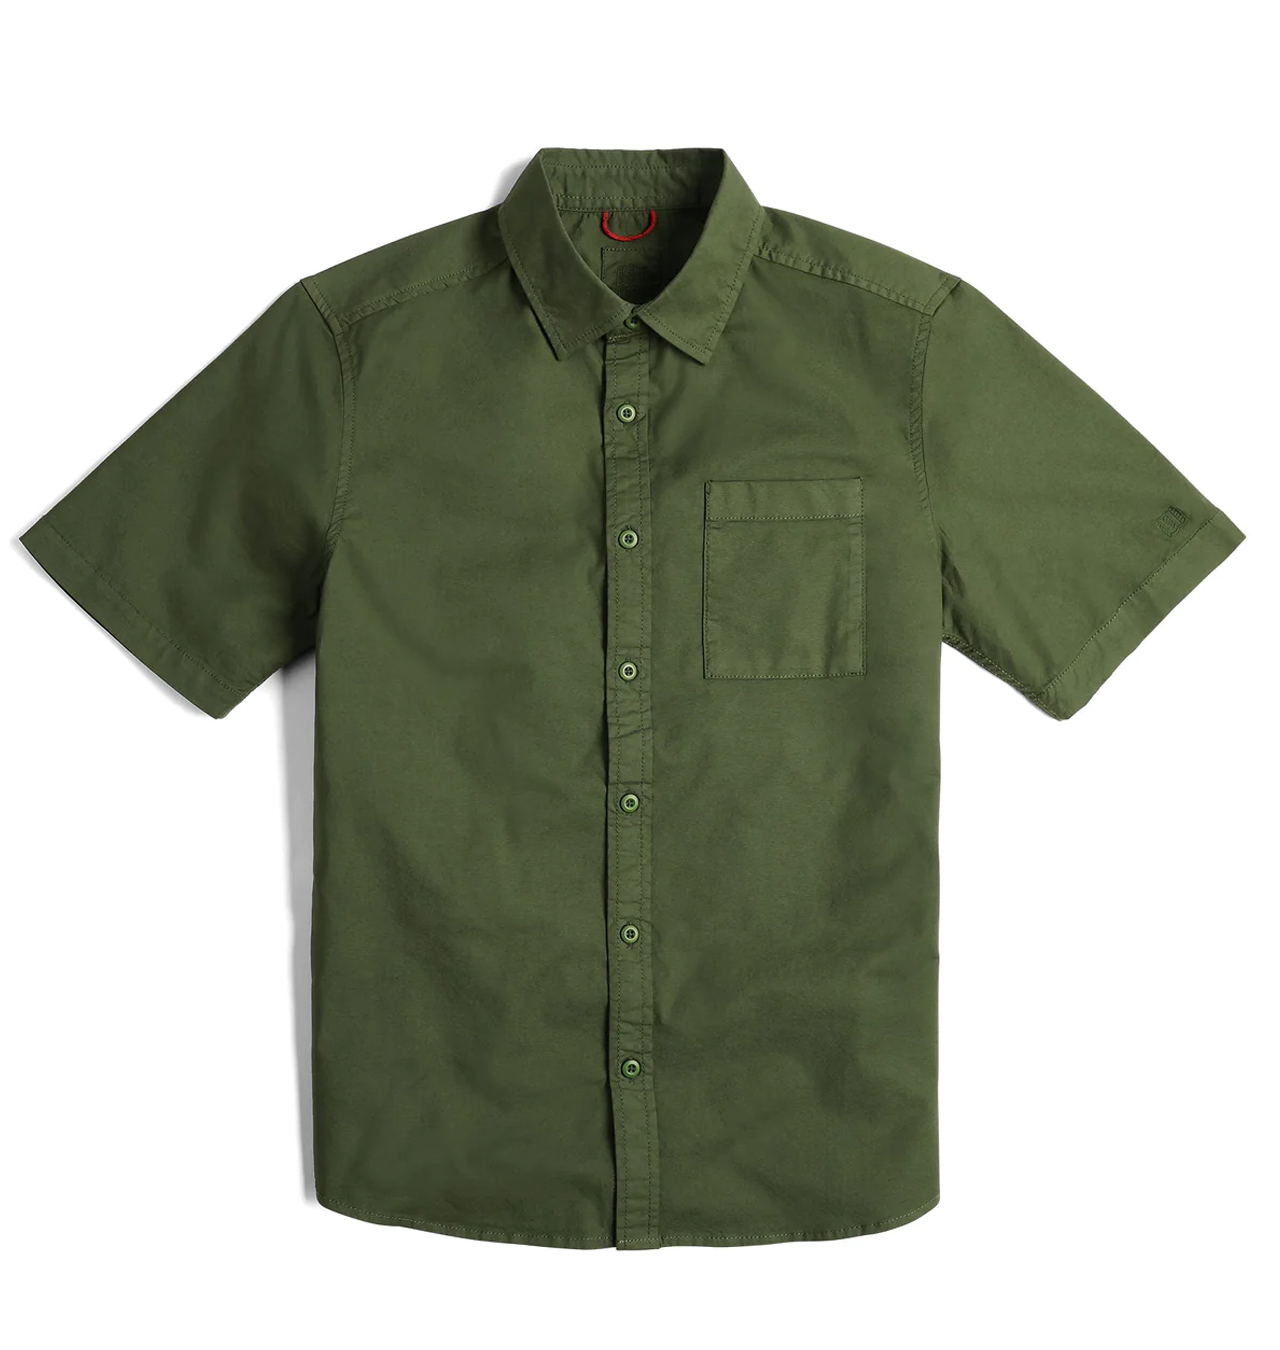 TOPO Designs - Dirt Desert Short Sleeve Shirt - Olive